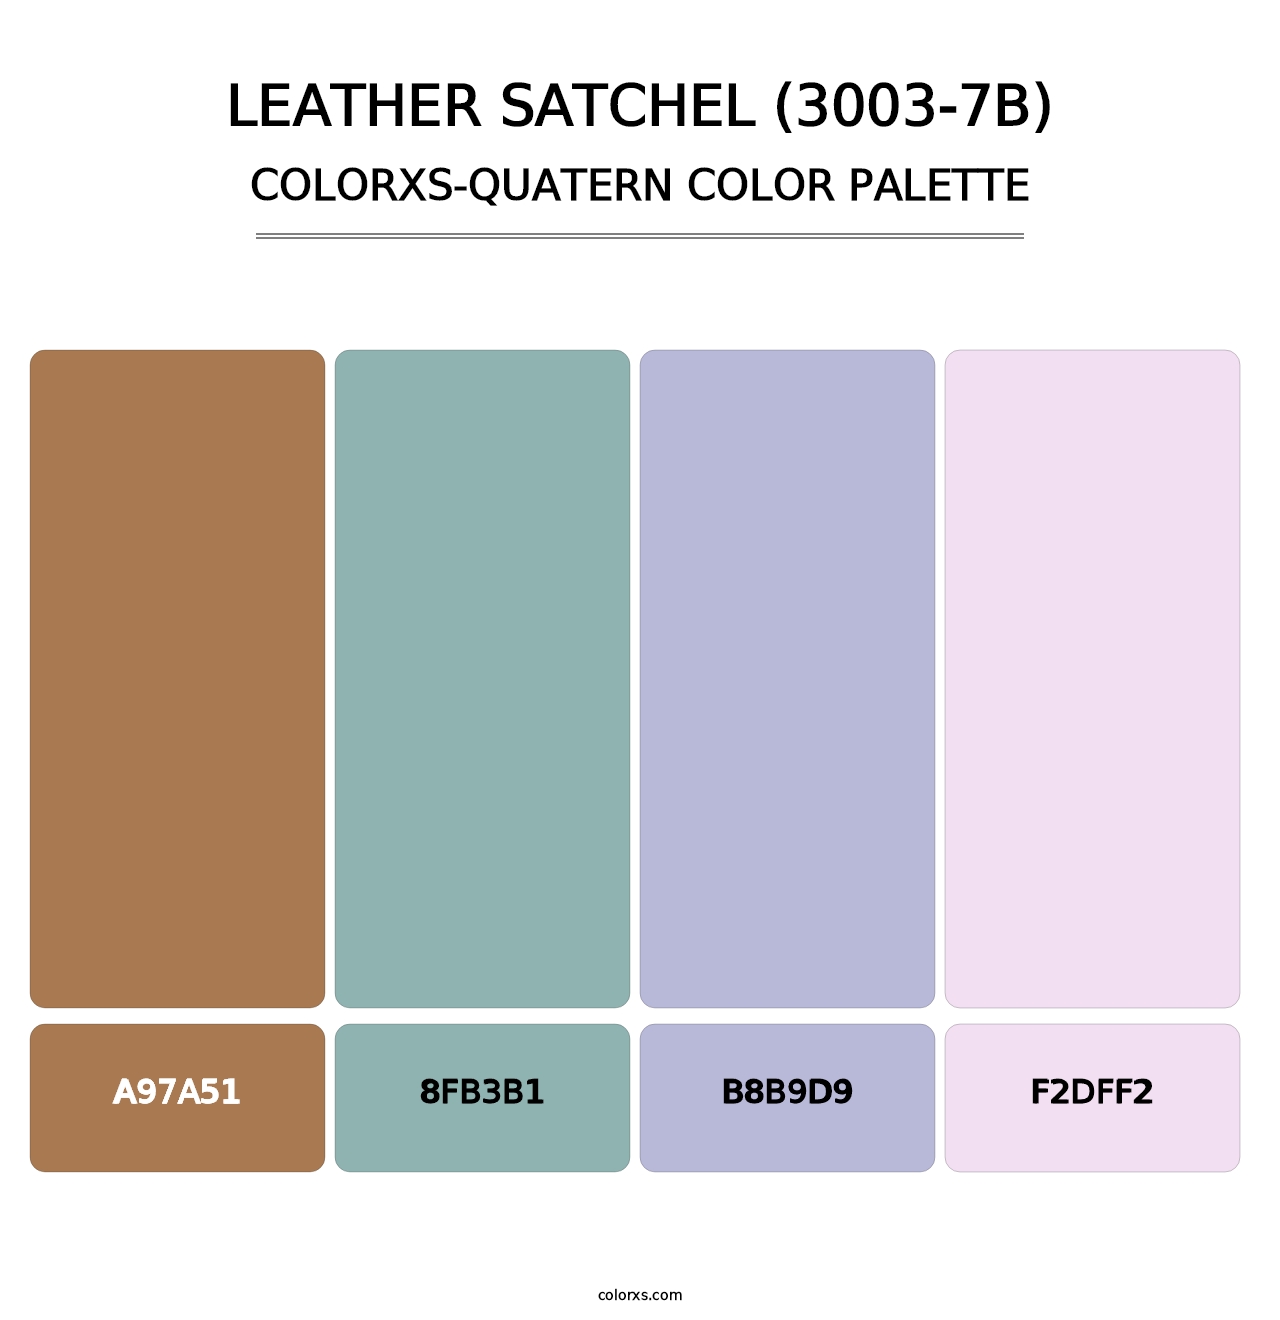 Leather Satchel (3003-7B) - Colorxs Quatern Palette